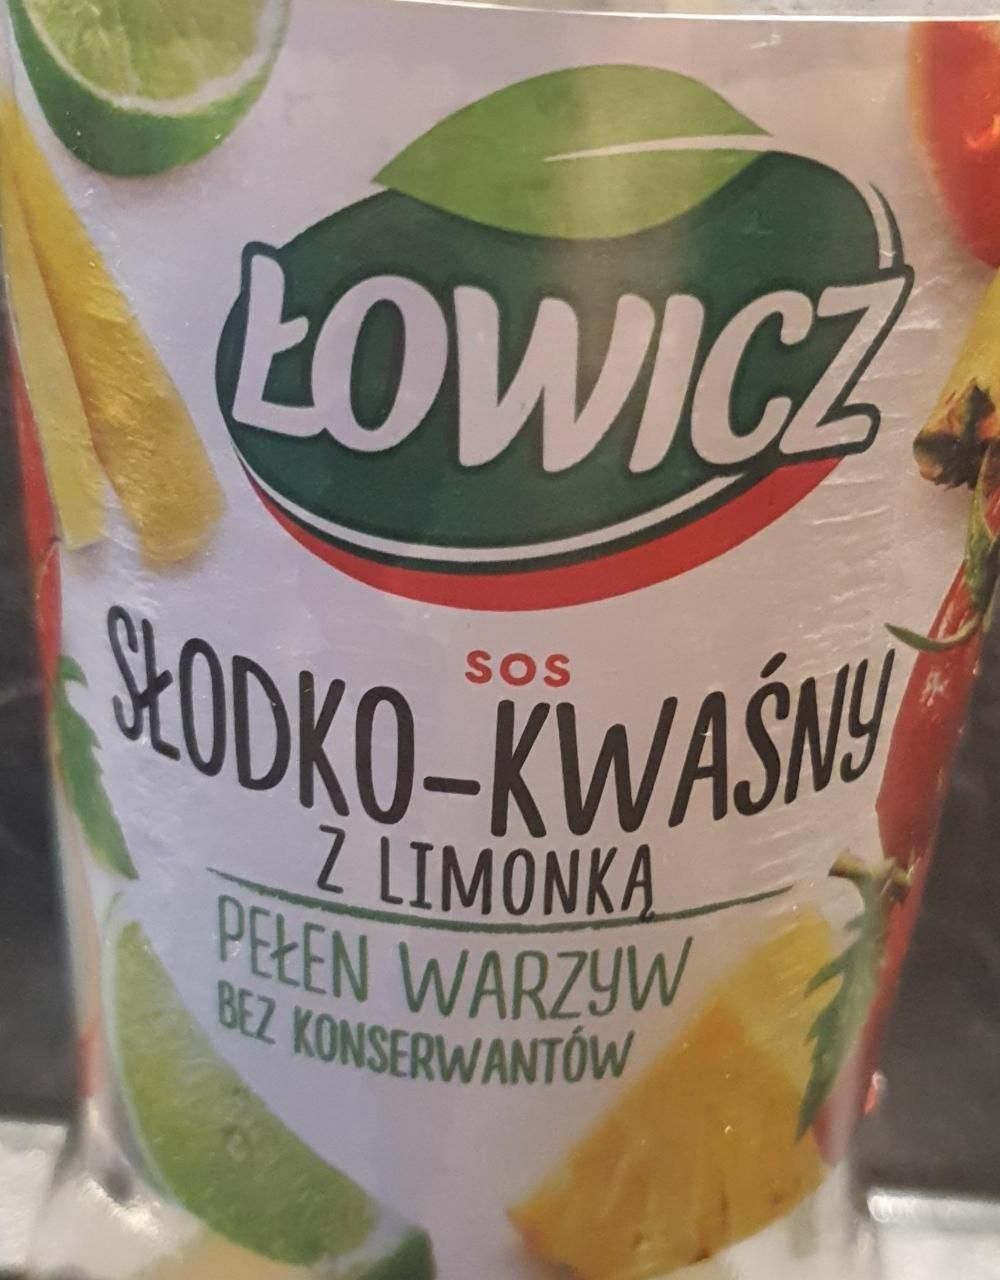 Fotografie - Sos słodko-kwaśny z limonką Łowicz